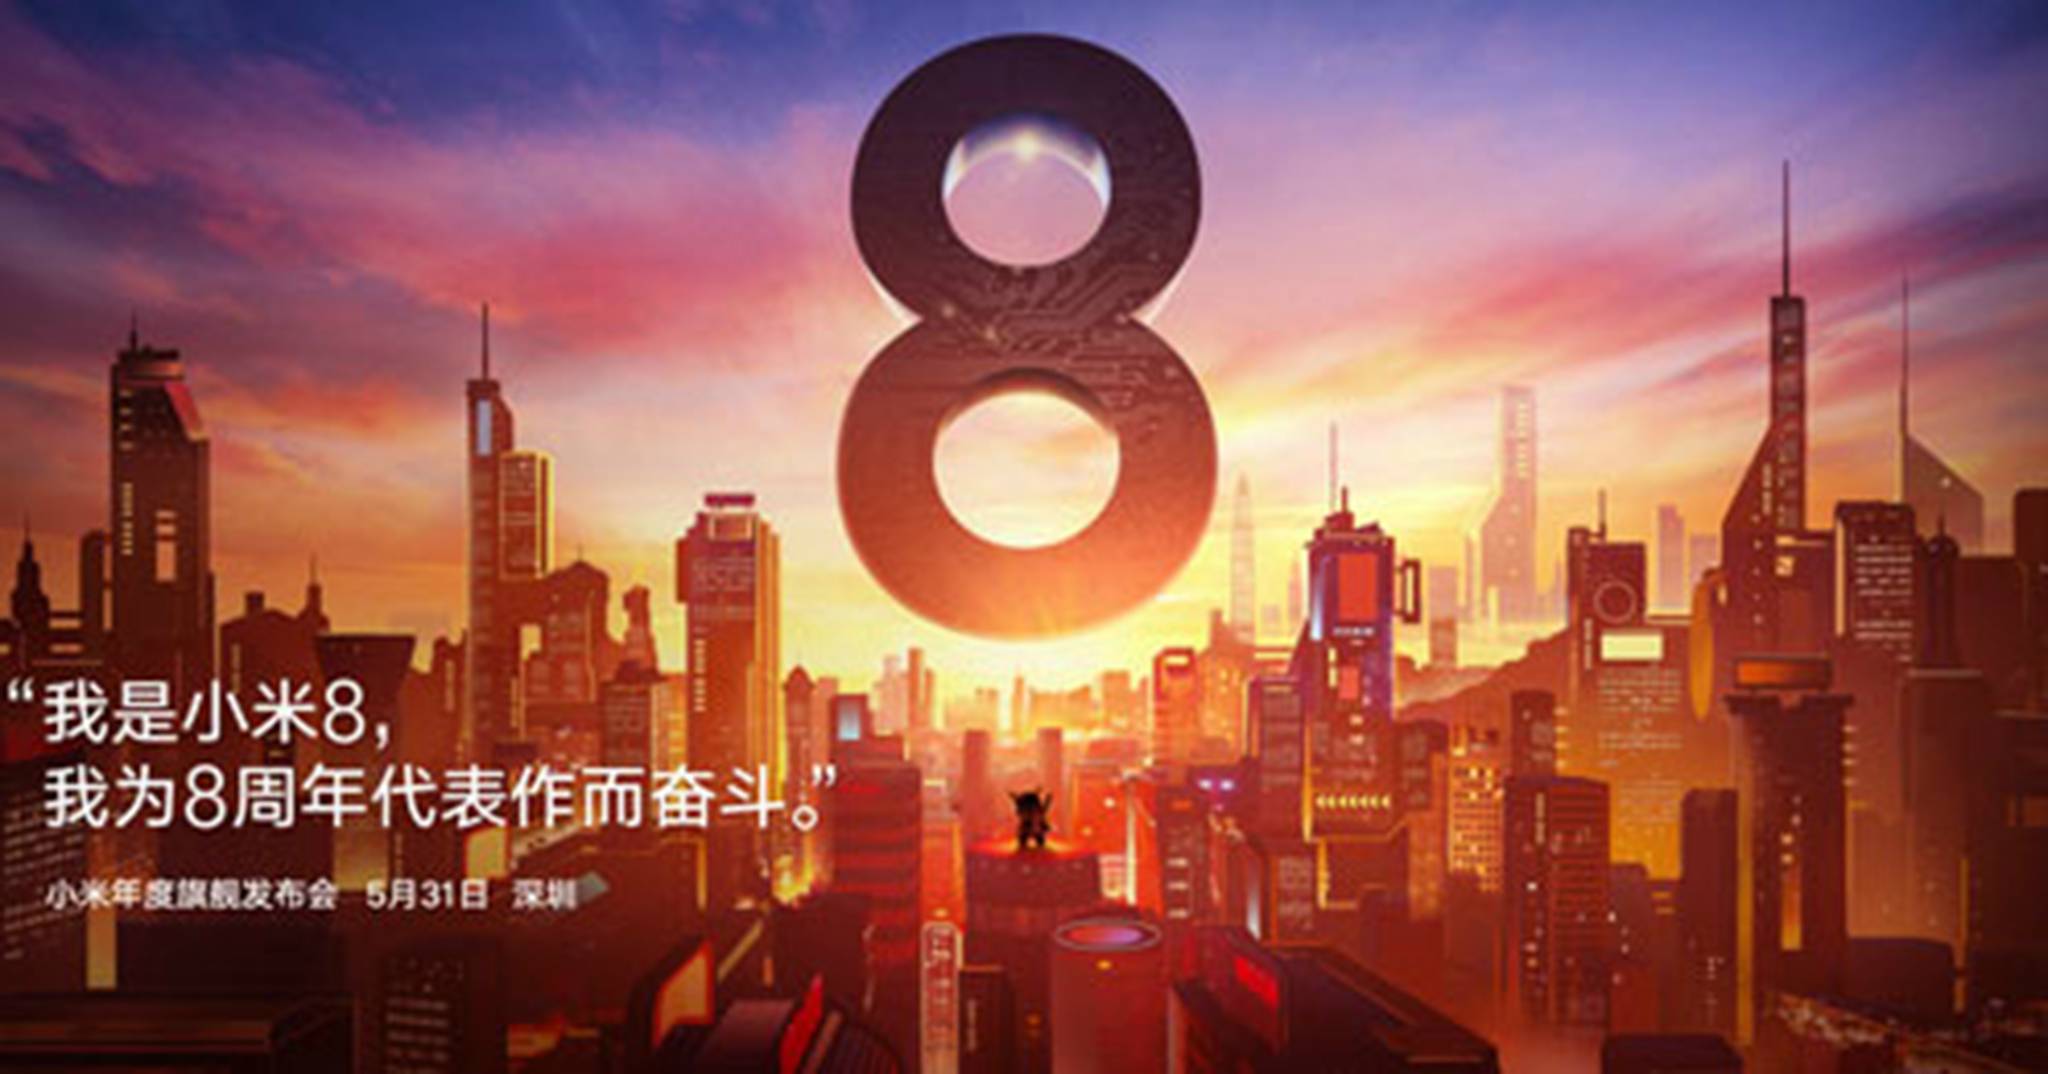 Xiaomi xác nhận sẽ ra mắt Mi 8 vào 31/5